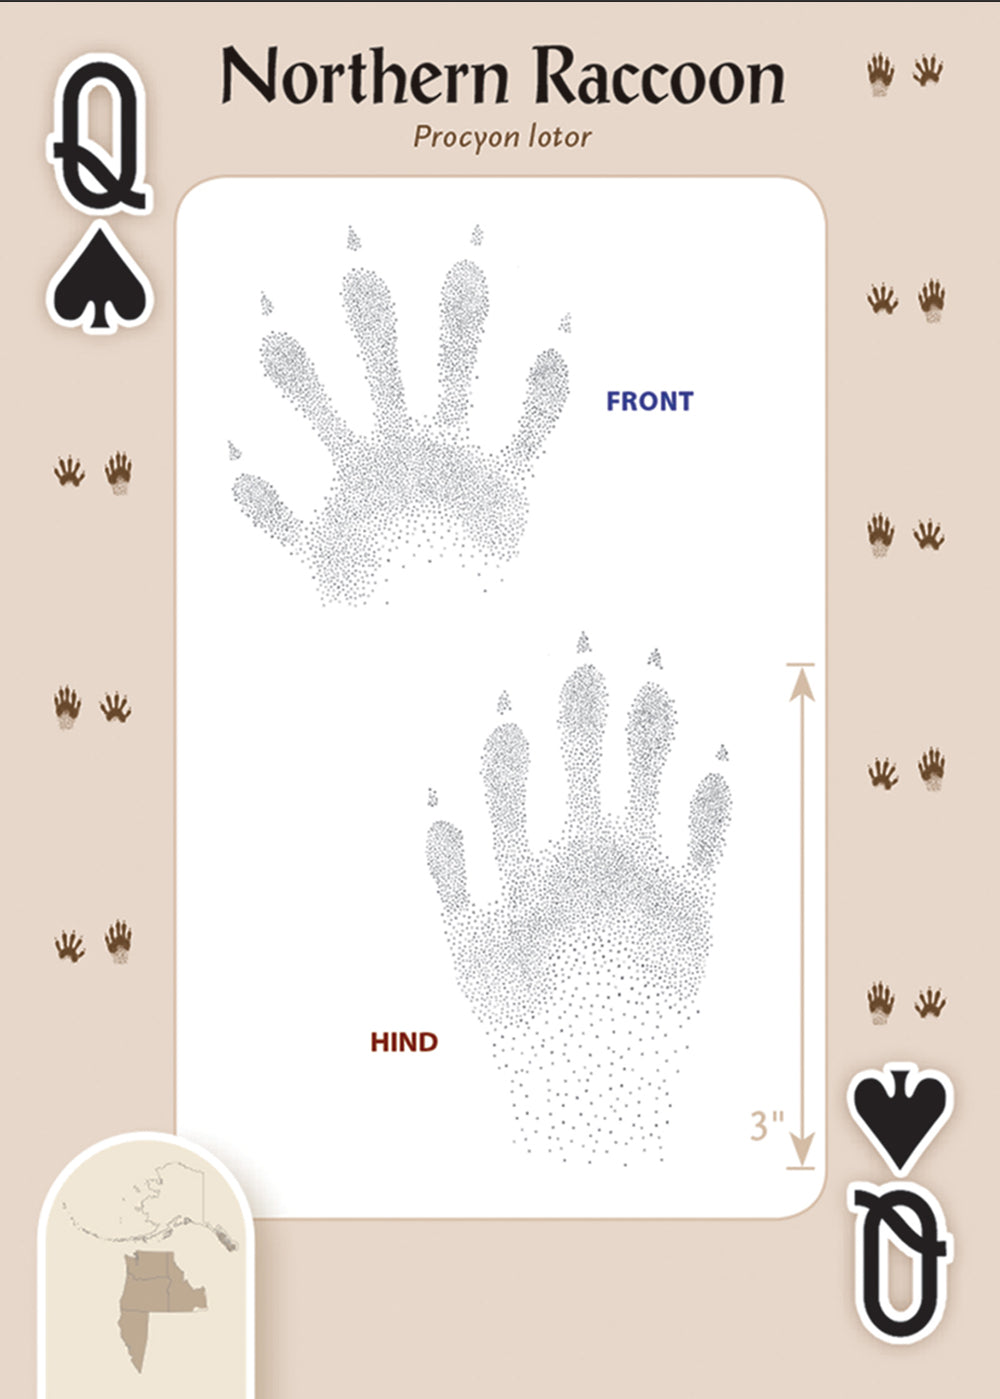 Animal Tracks of Northwest Playing Cards